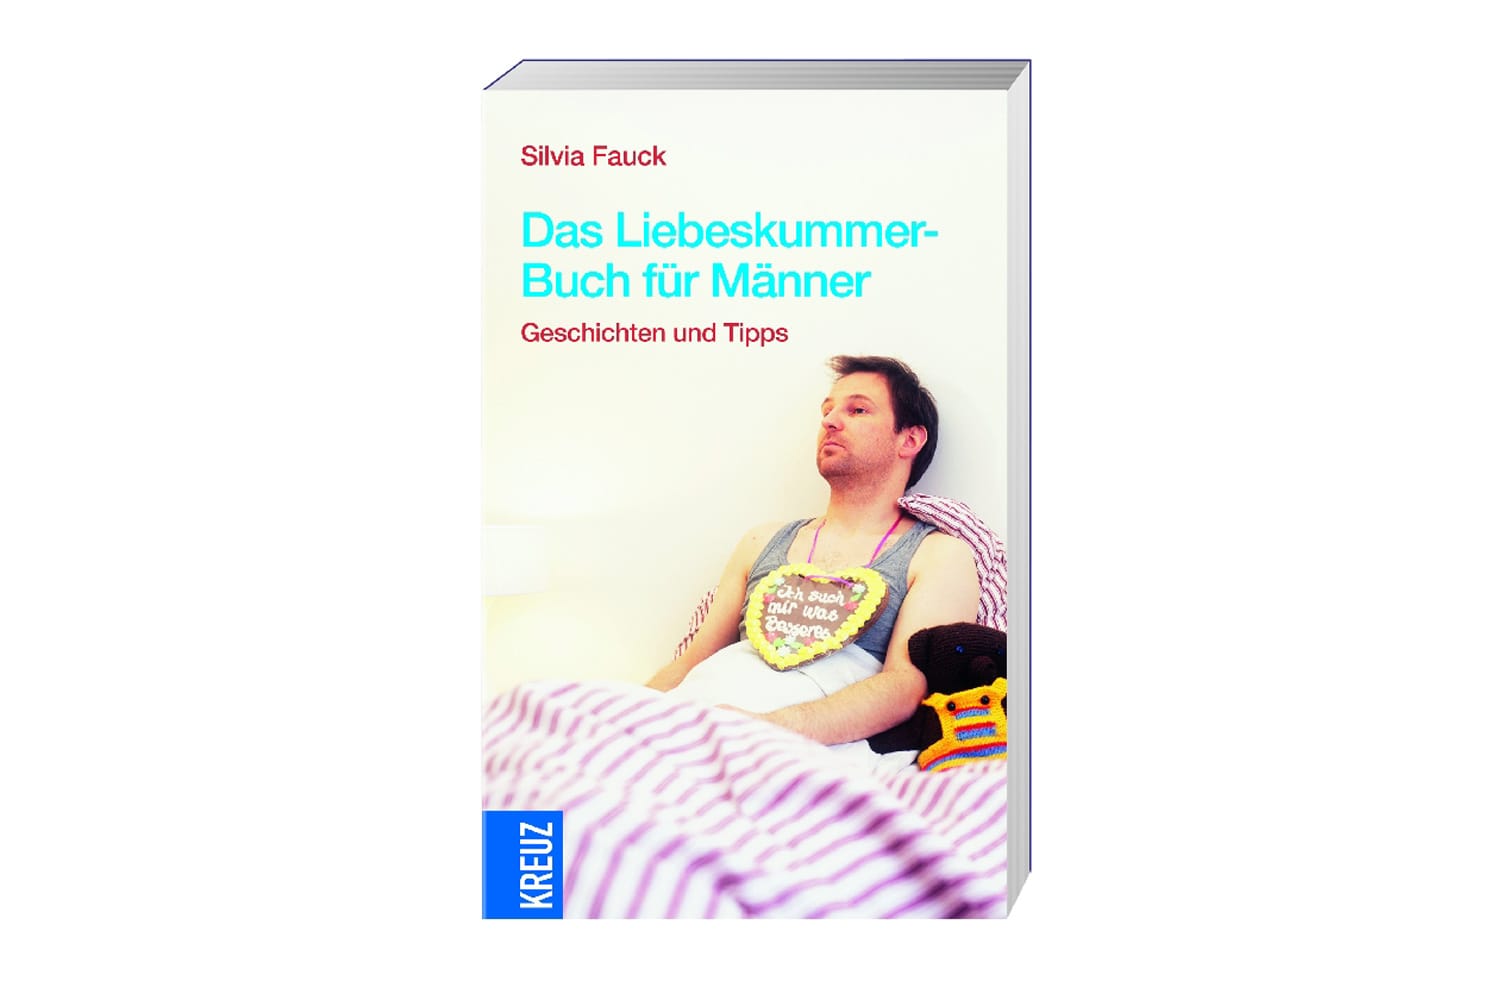 Silvia Faucks "Das Liebeskummer-Buch für Männer" (Kreuz Verlag um 14,95 Euro) ist ganz auf den Kummer von verliebten Männern zugeschnitten.